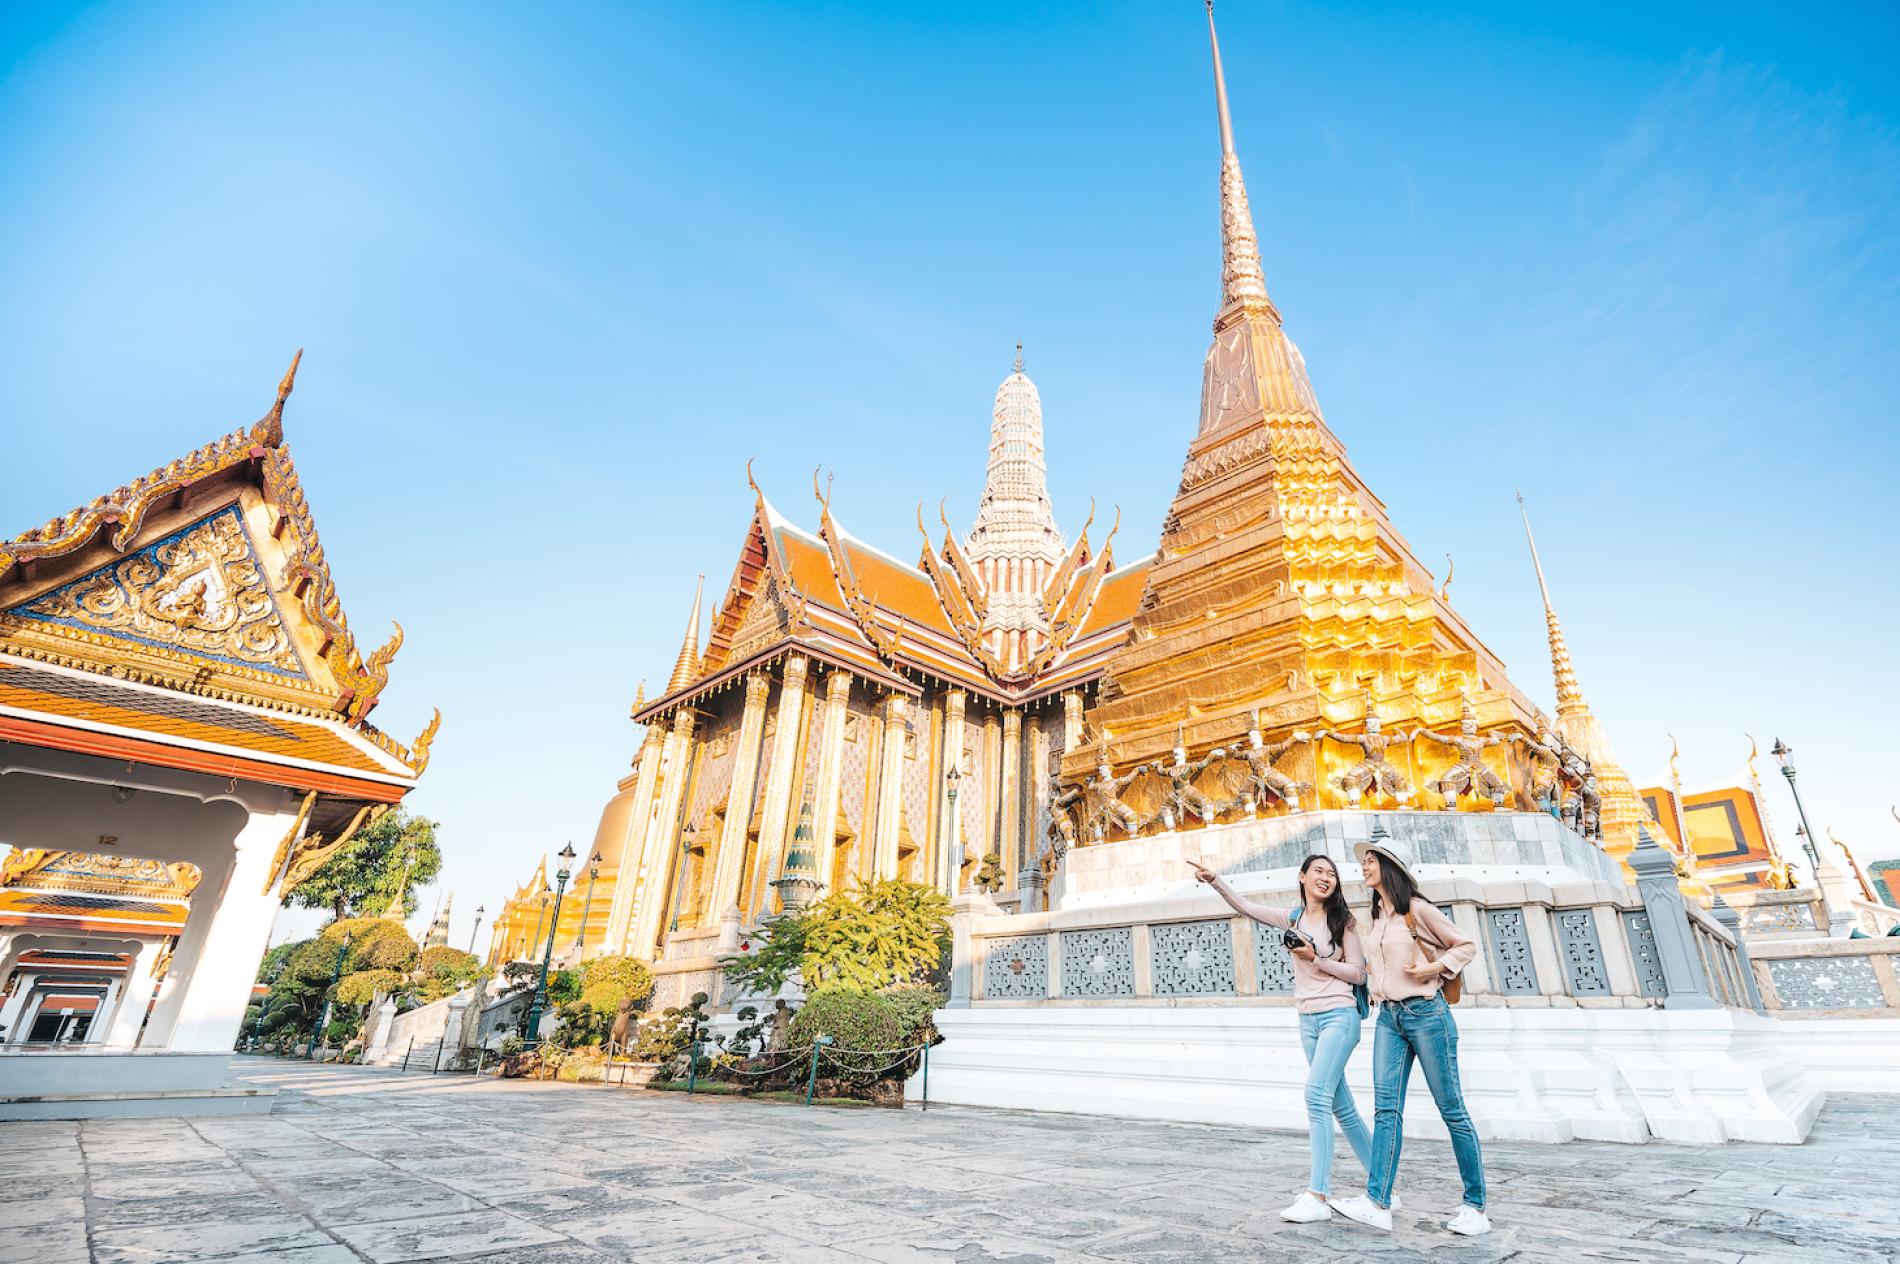 Giá vé vào Cung điện Hoàng gia Thái Lan là 500 baht (tương đương khoảng 16 đô la Mỹ hoặc 350.000 VNĐ)